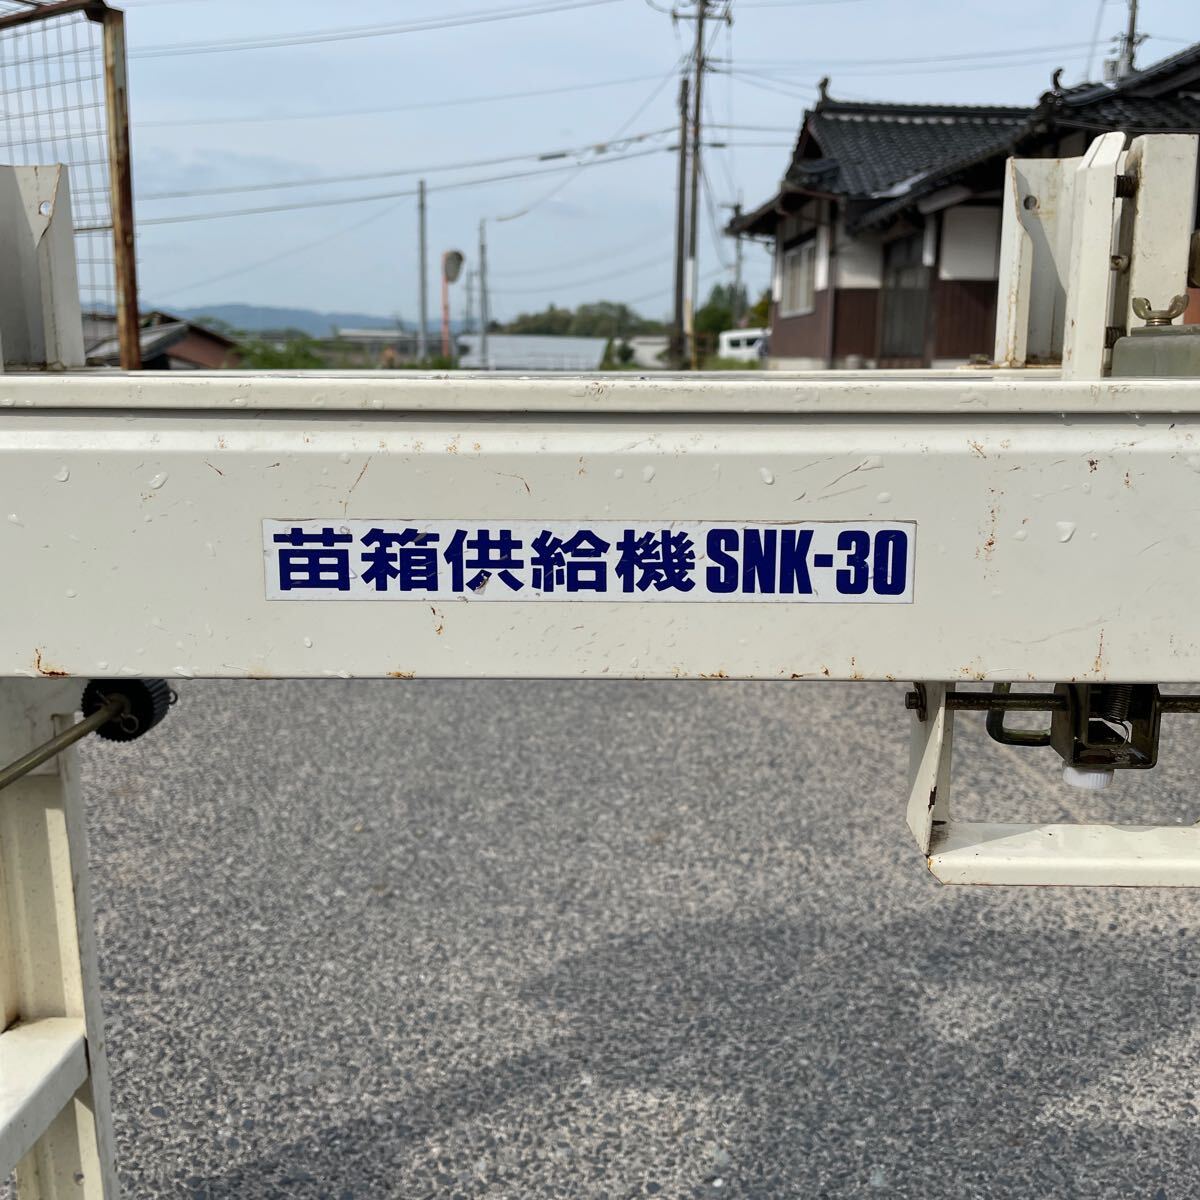 スズテック 苗箱供給機 SNK-30 100V _画像2